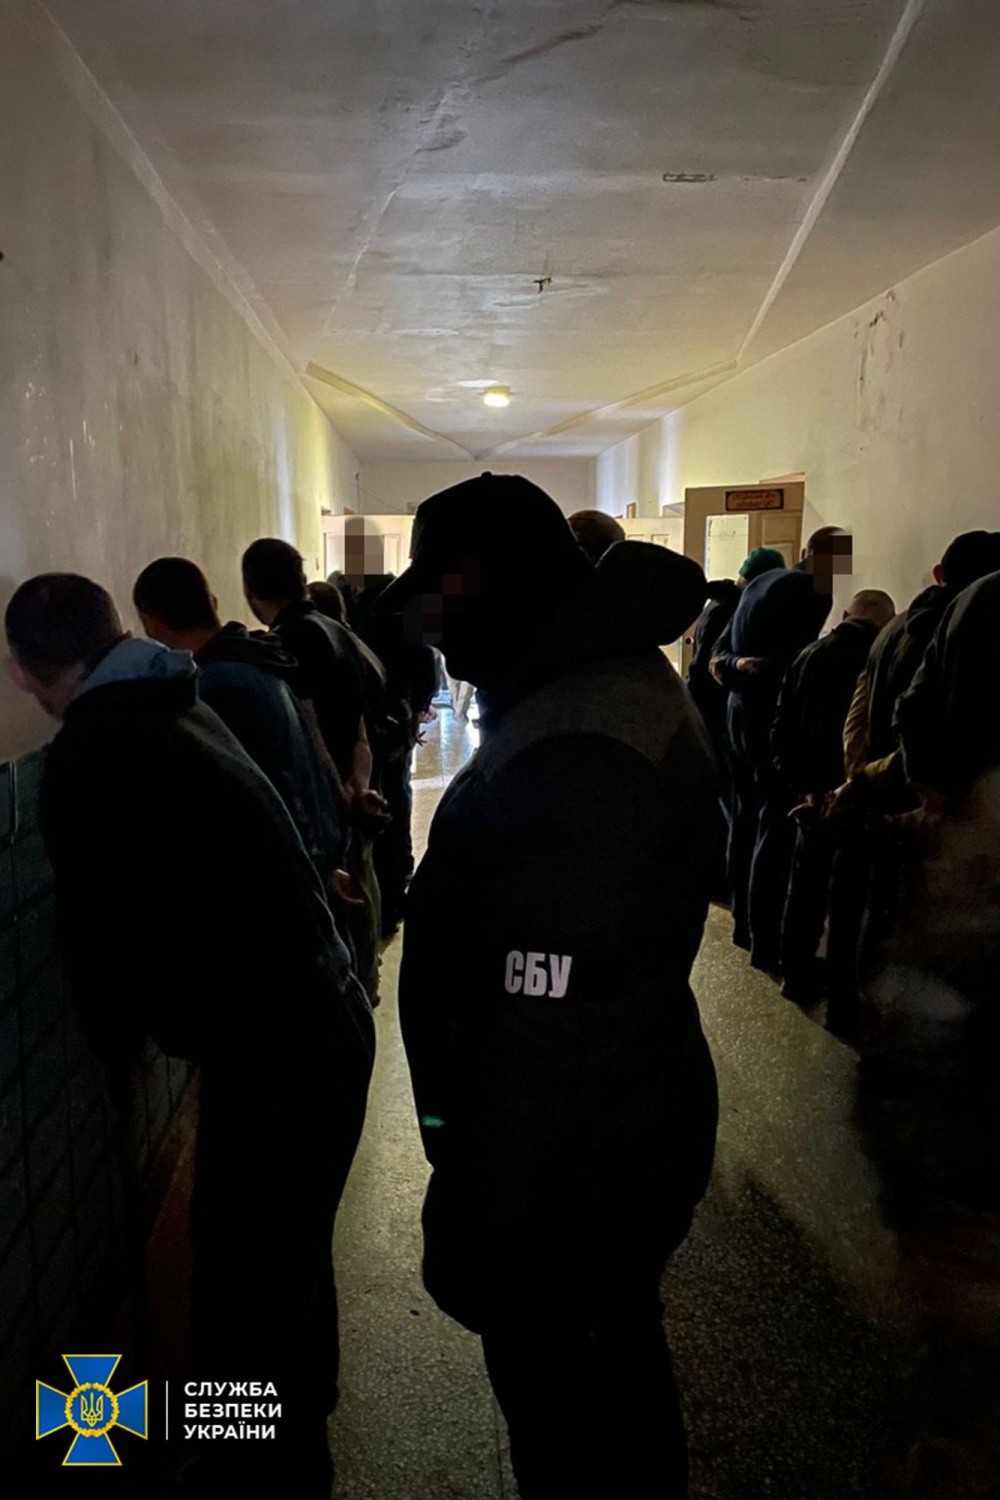 СБУ: В нескольких украинских тюрьмах "работали воры в законе", которые координировались из РФ